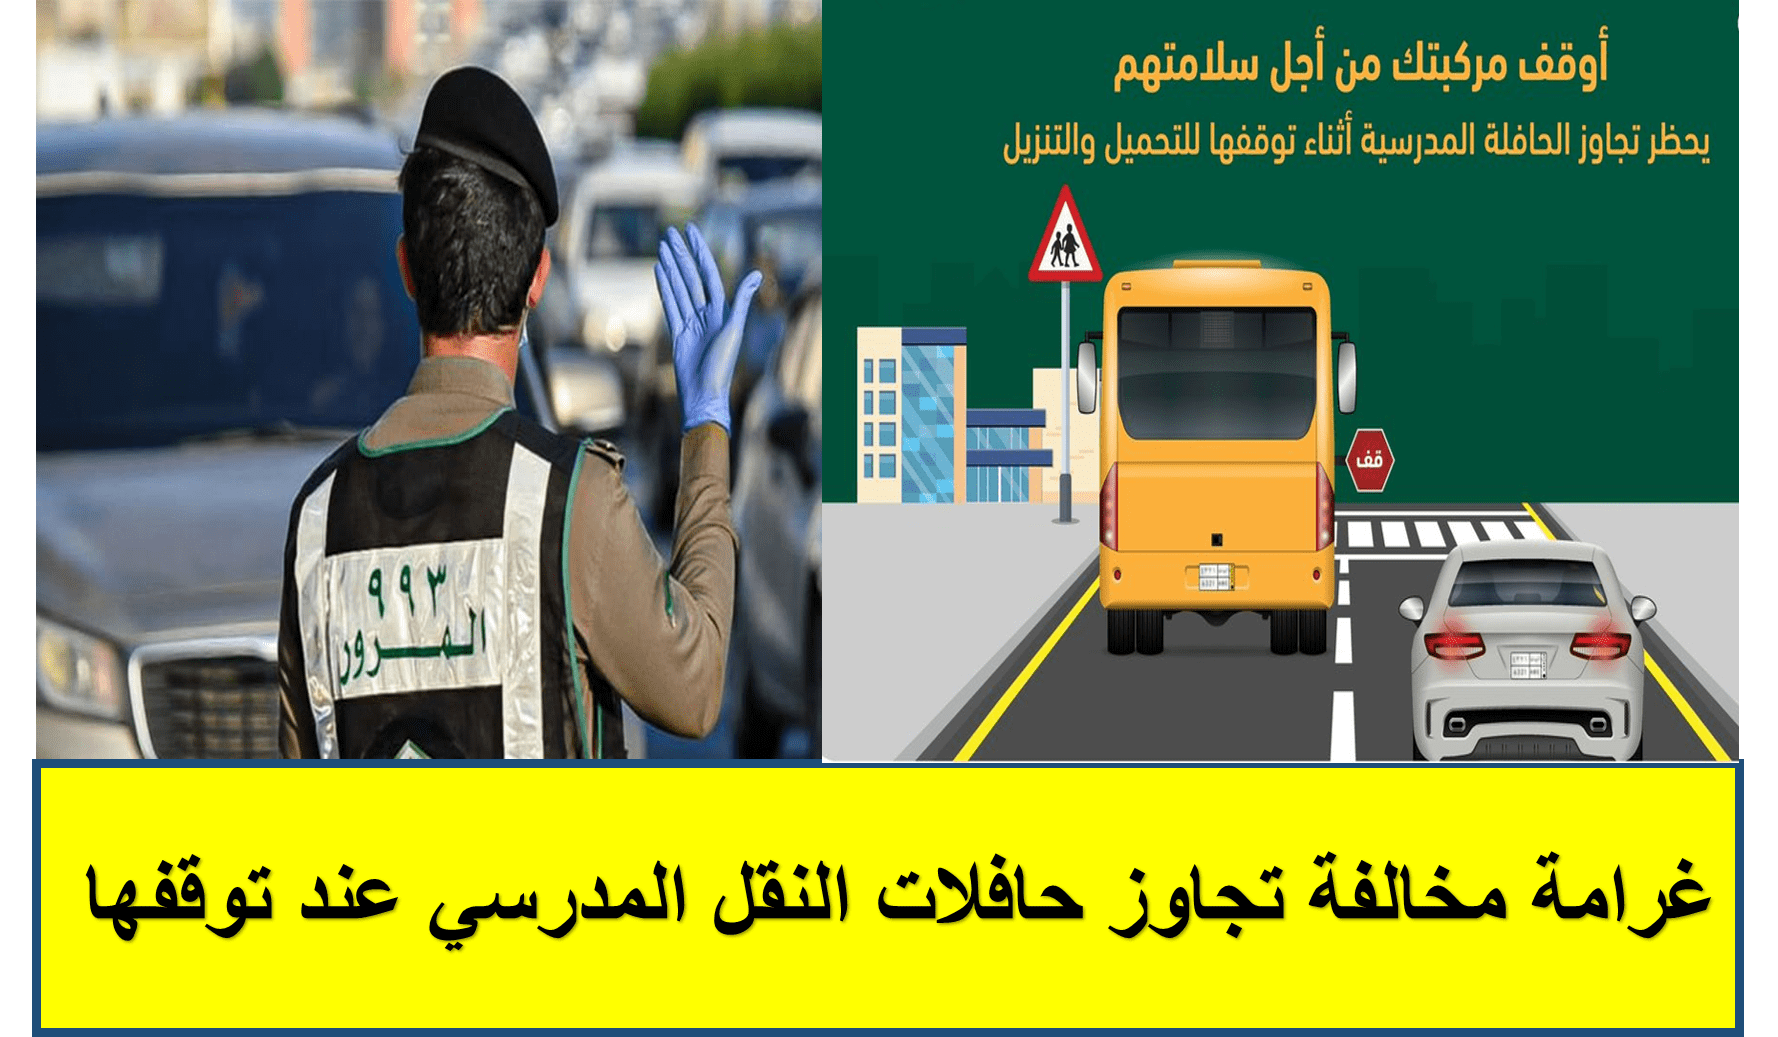 غرامة مخالفة تجاوز حافلات النقل المدرسي عند توقفها